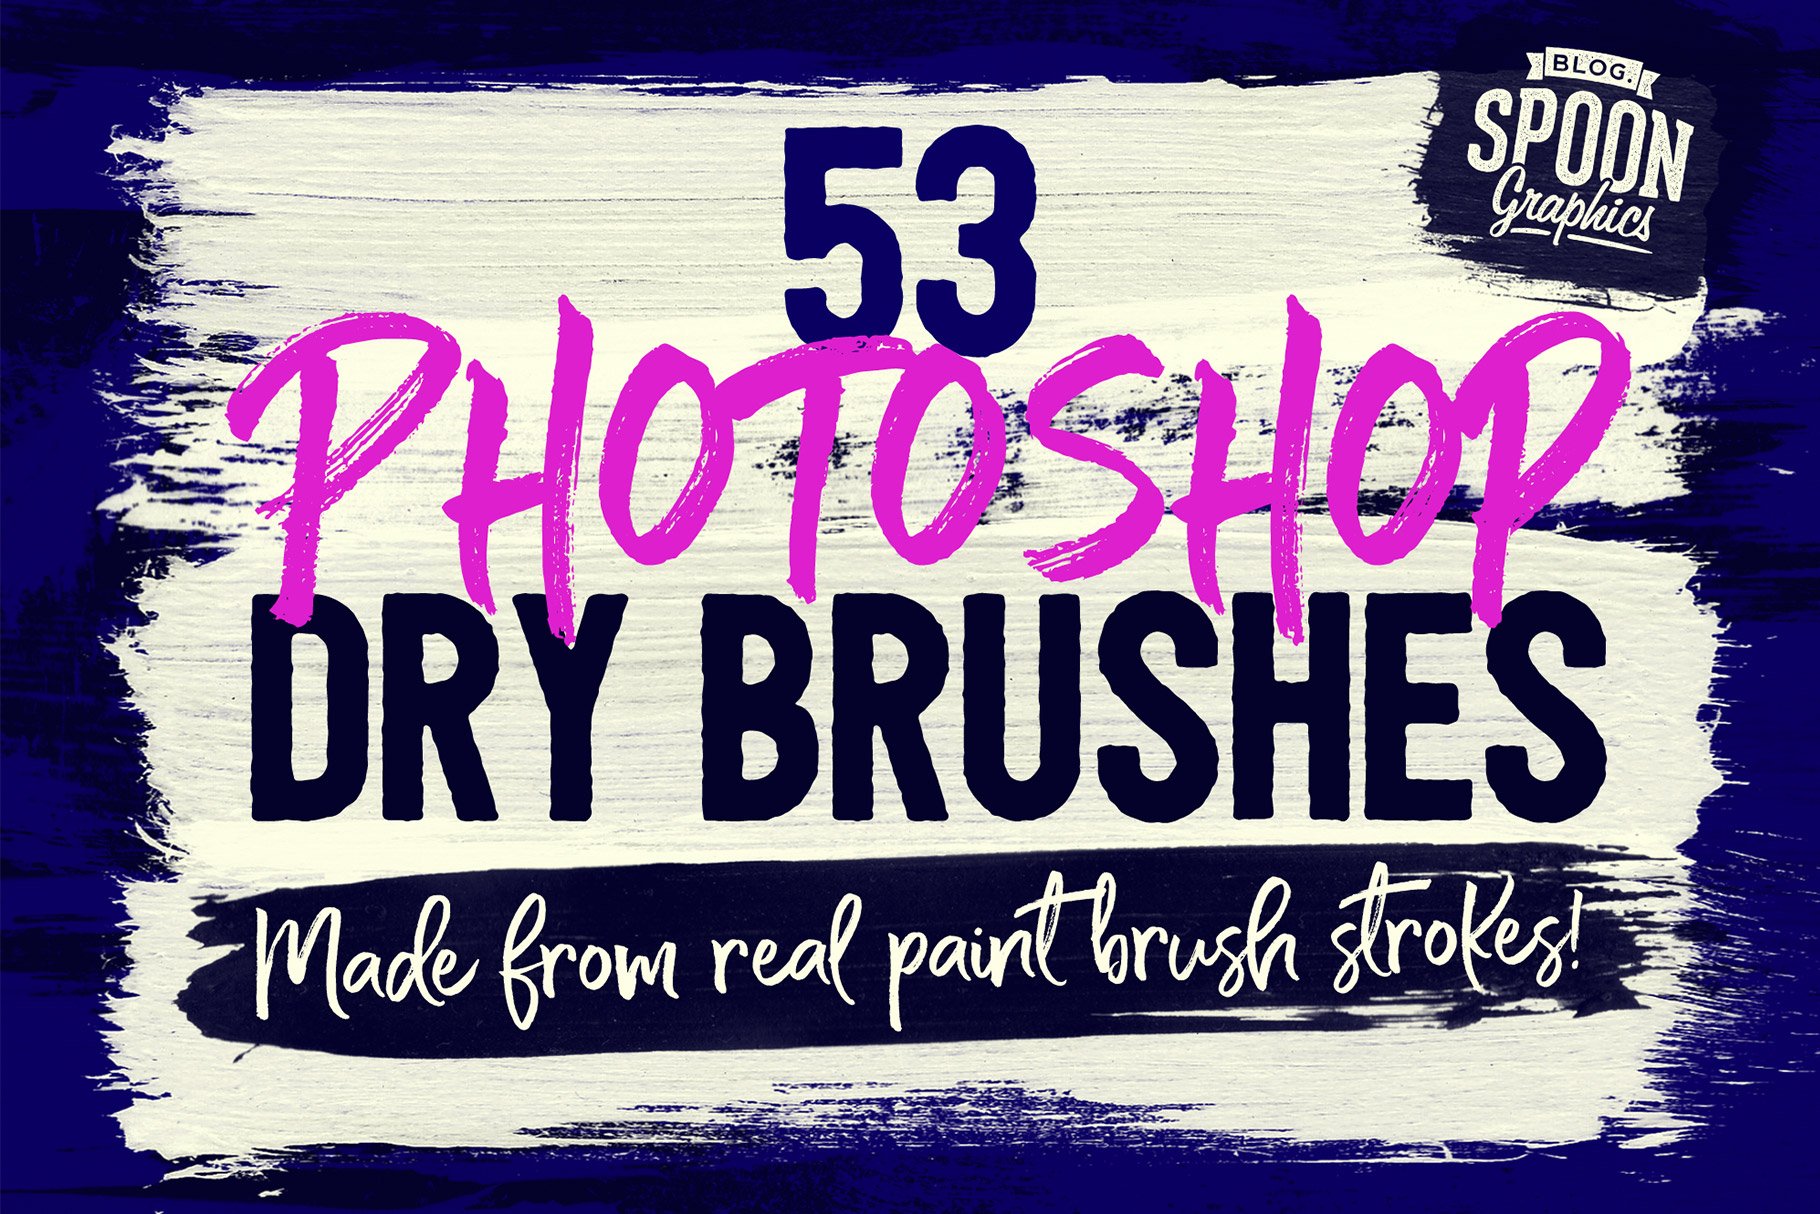 53 Photoshop Dry Brushescover image.